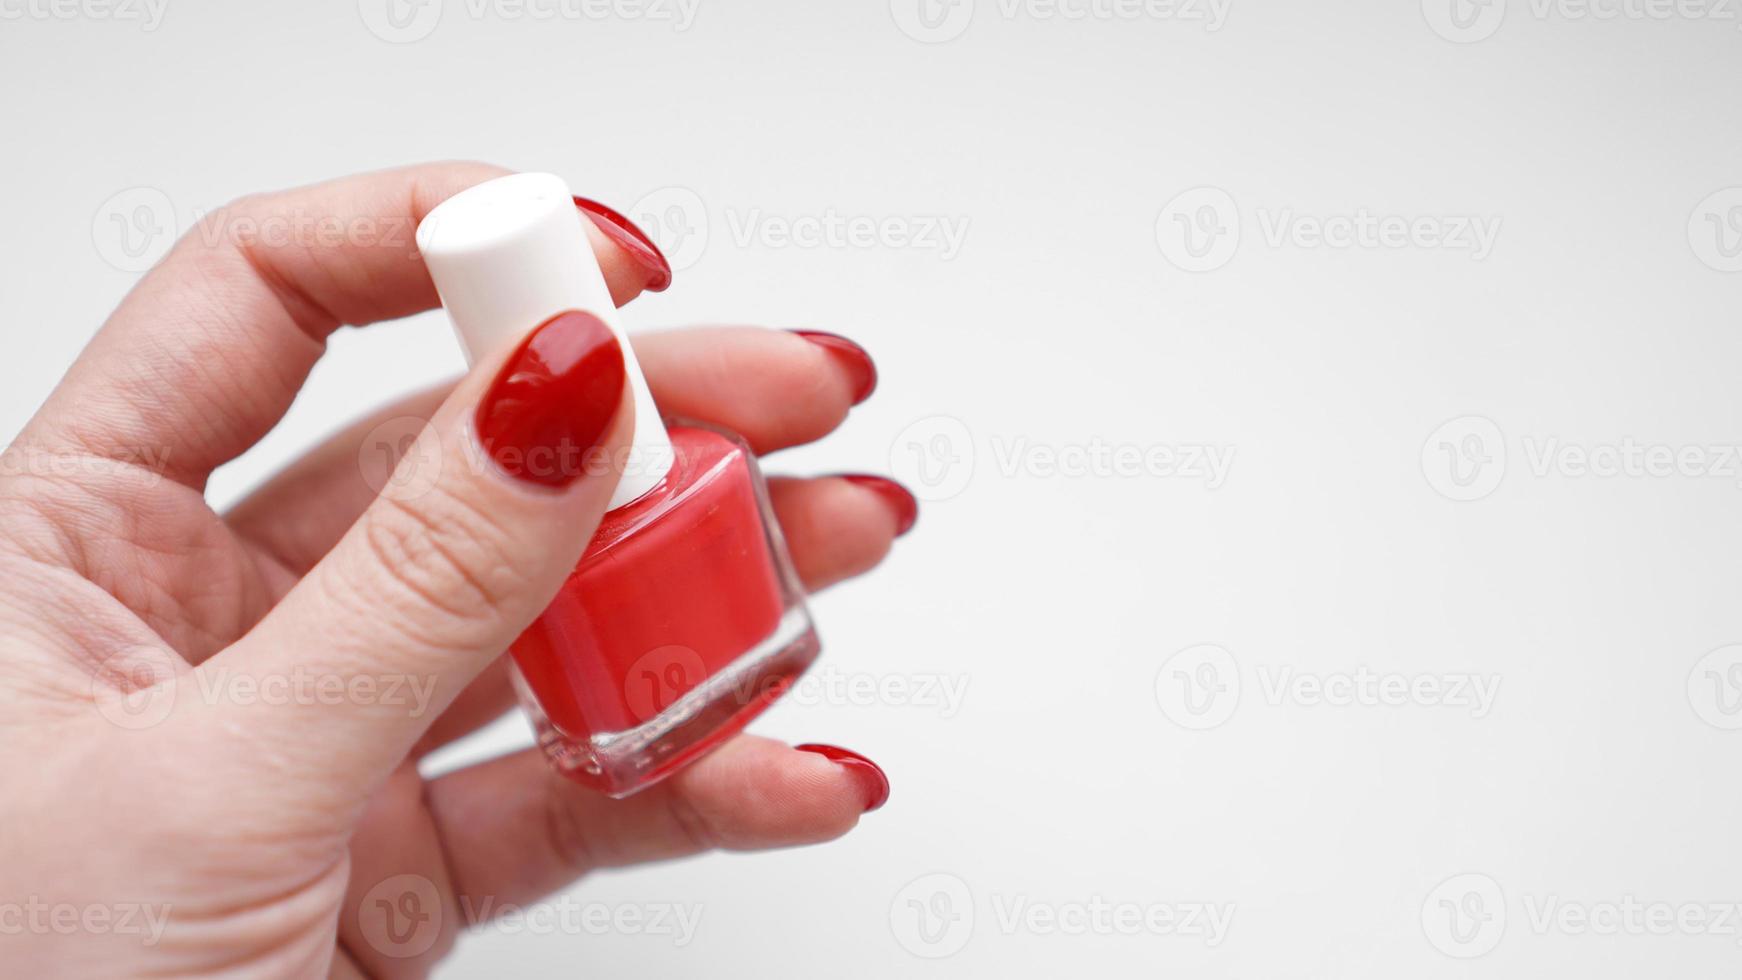 manicura. Hermosas uñas de mujer cuidadas con esmalte de uñas rojo foto